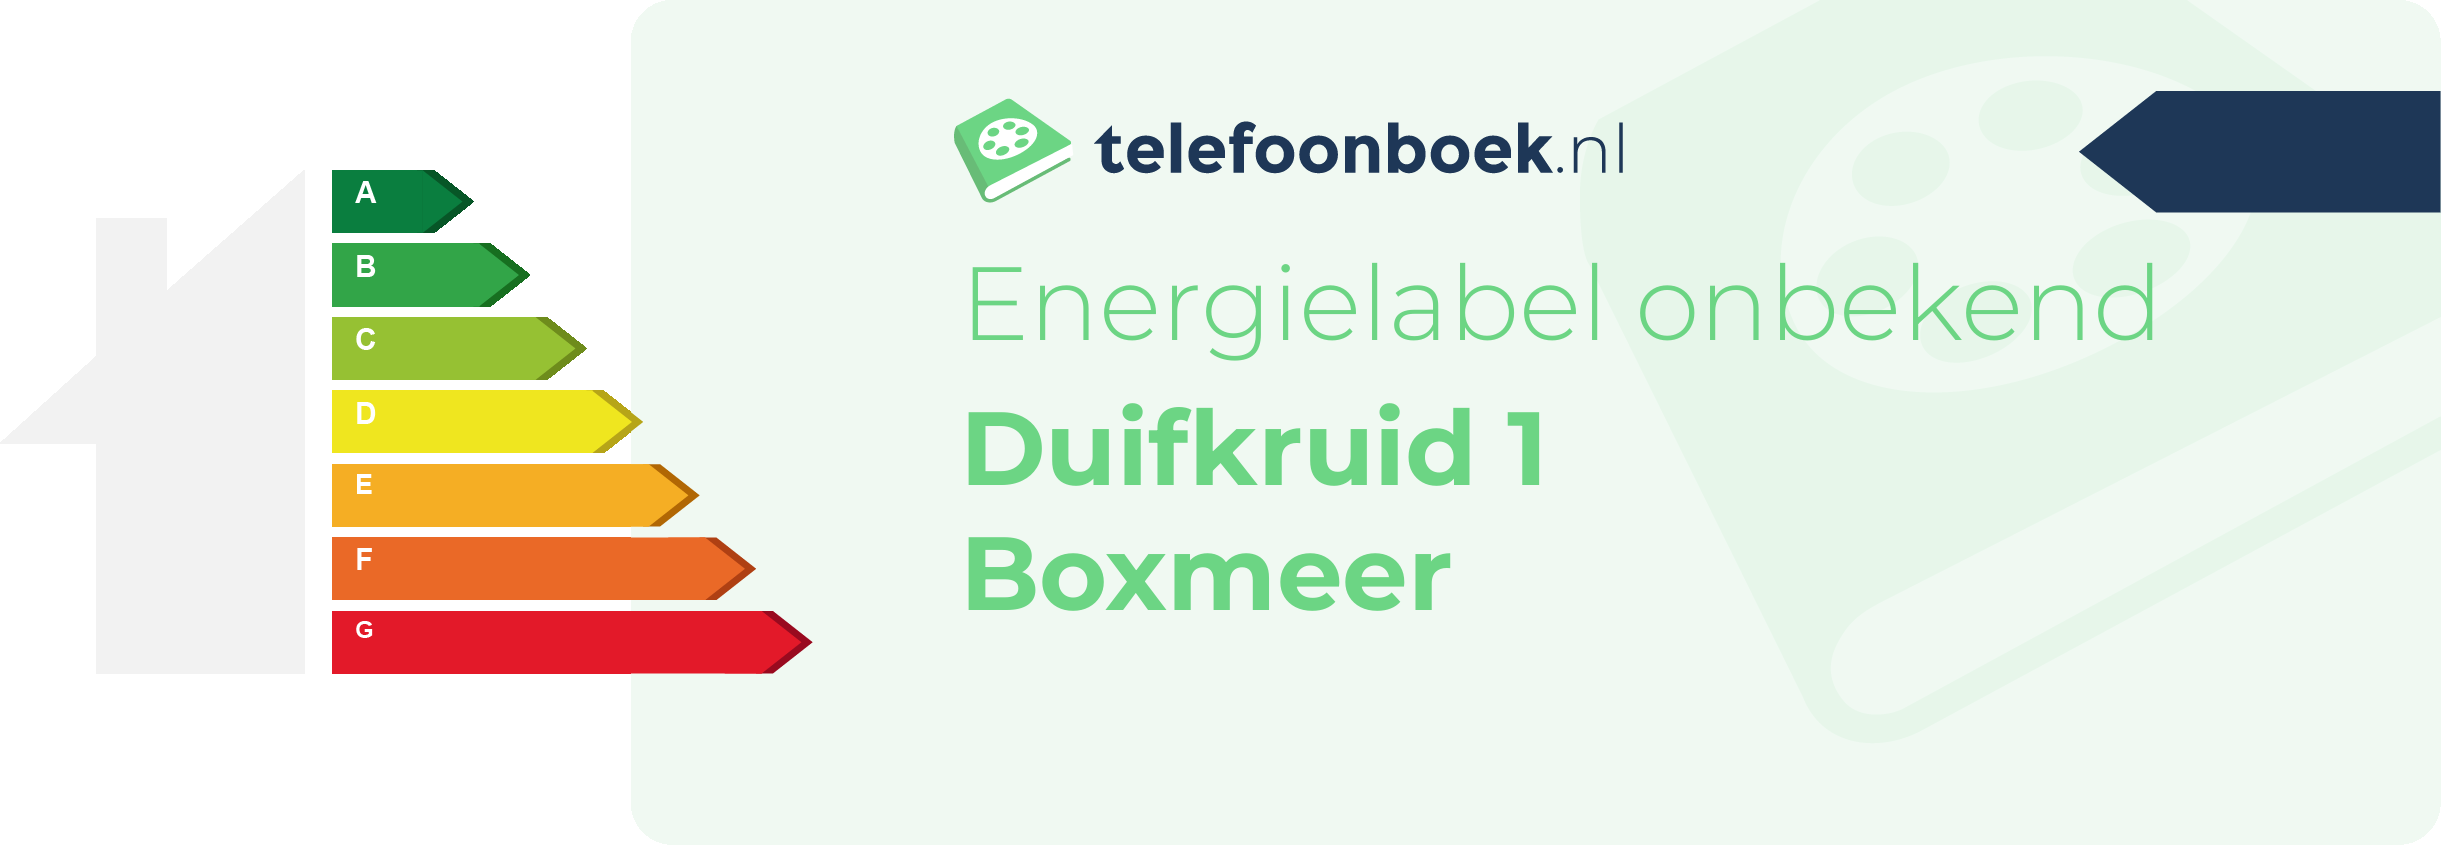 Energielabel Duifkruid 1 Boxmeer